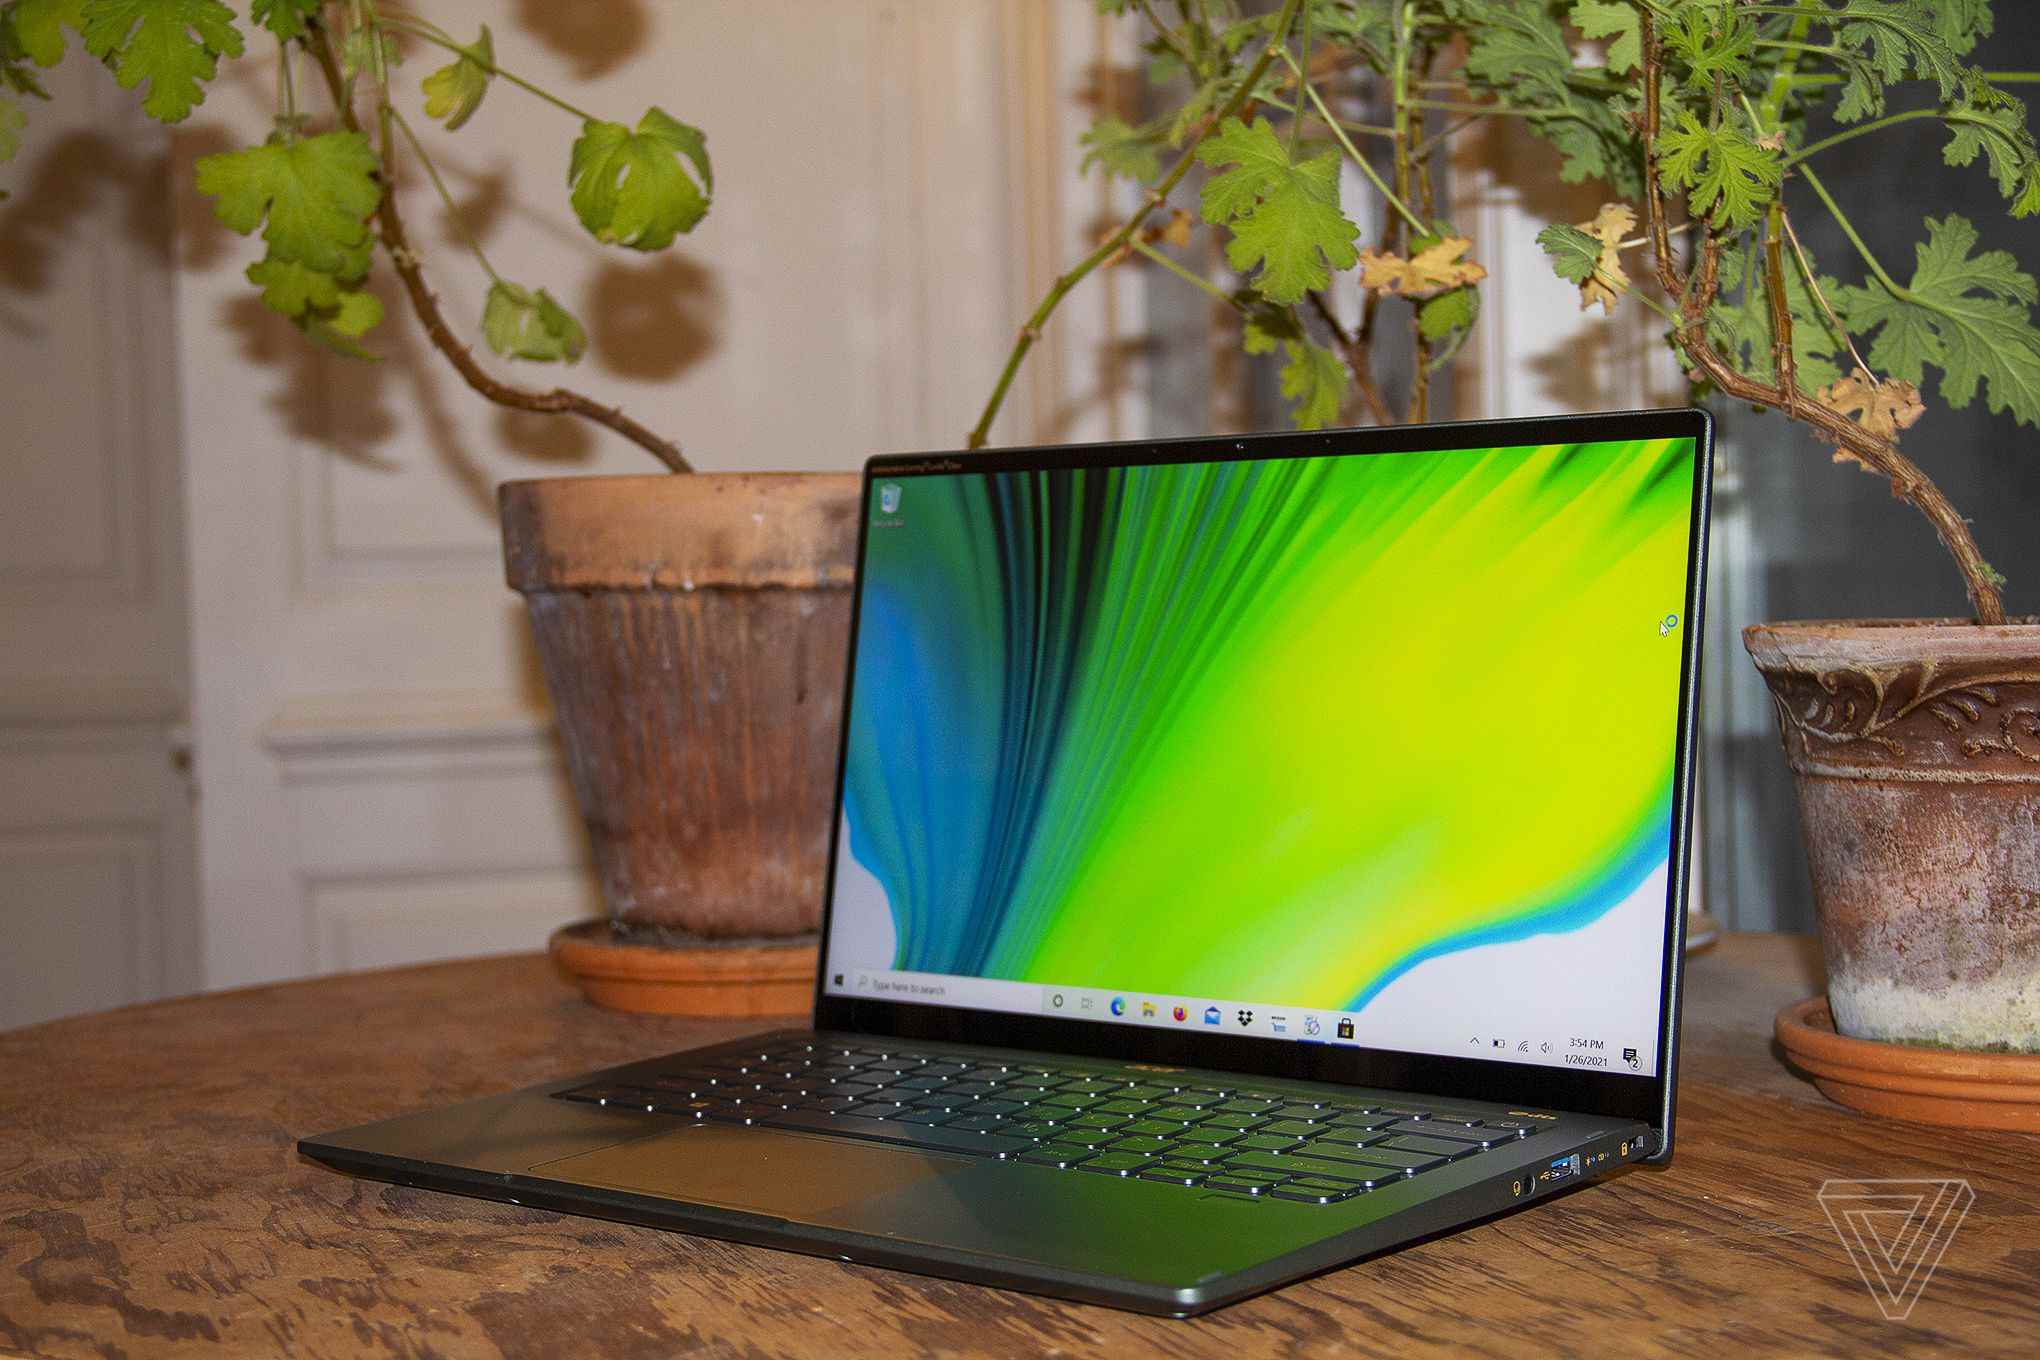 Acer Swift 5, iki ev bitkisinin önünde bir masa üzerinde, açık ve sola açılı.  Ekranda yeşil, mavi ve beyaz bir arka plan görüntülenir.